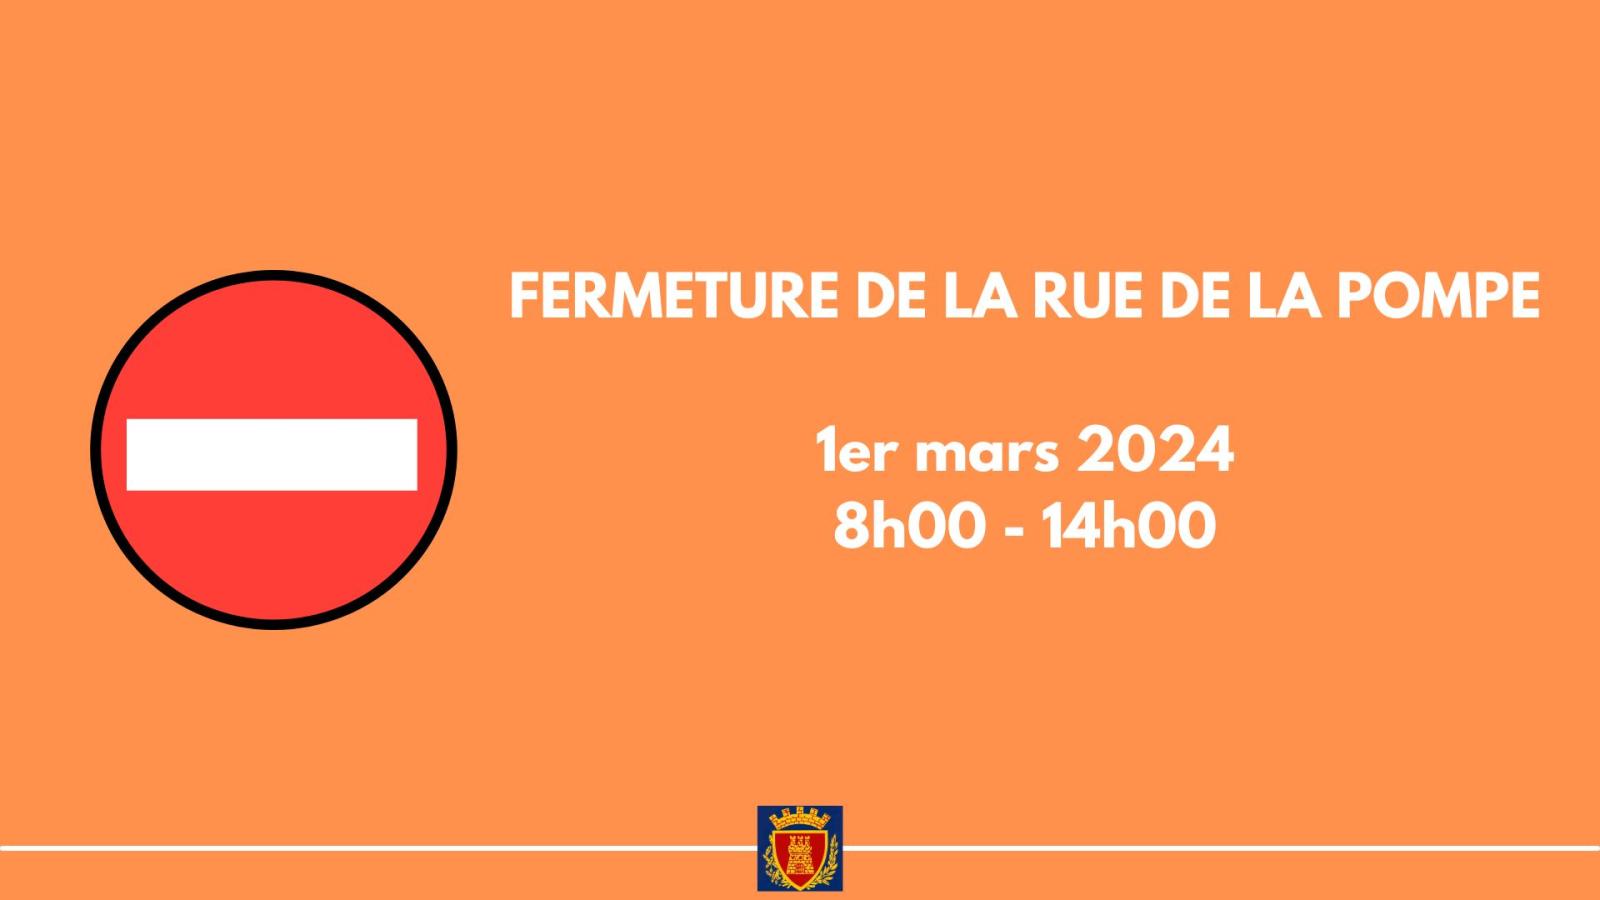 Friday March 1, 2024 - Closure of Rue de la Pompe